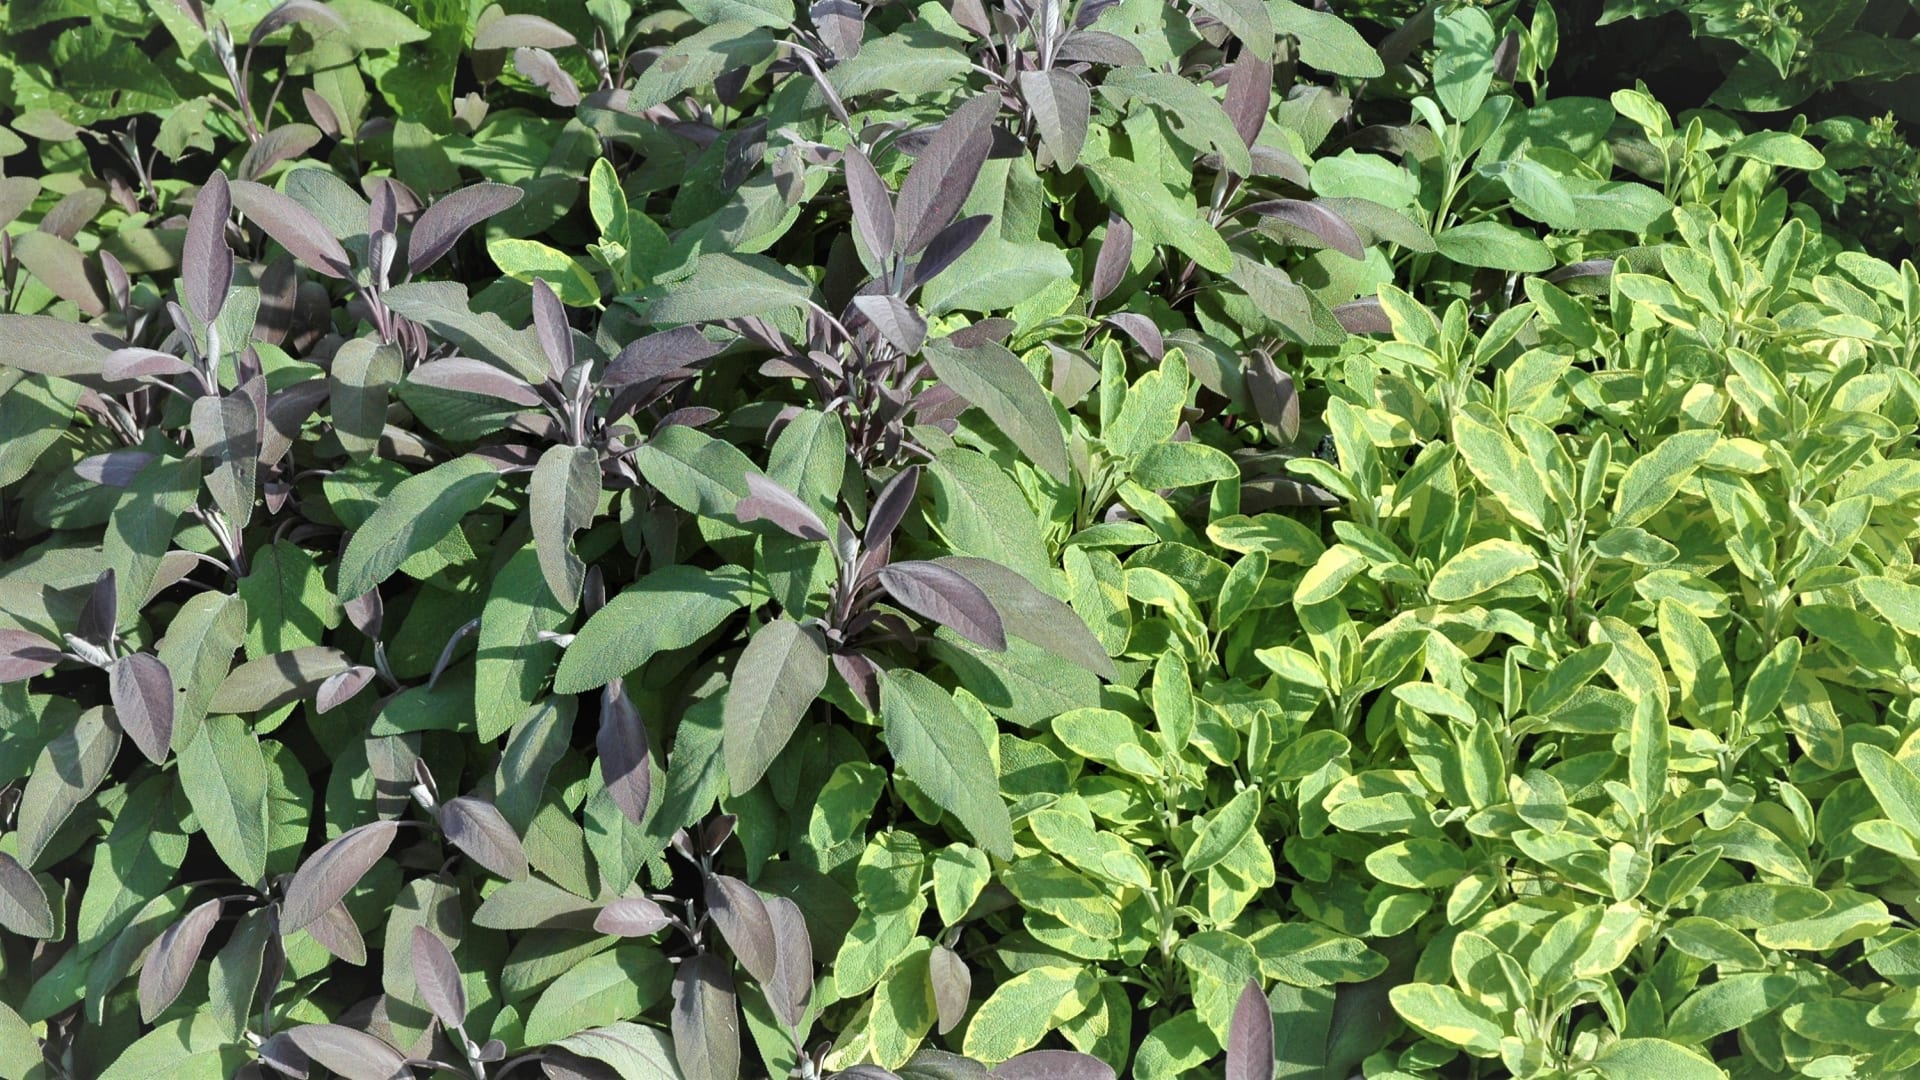 Šalvěj lékařská: Pestrolisté kultivary oživí převážně zelenou bylinkovou zahrádku. Disponují stejným aroma i všemi léčivými účinky jako klasická šalvěj.